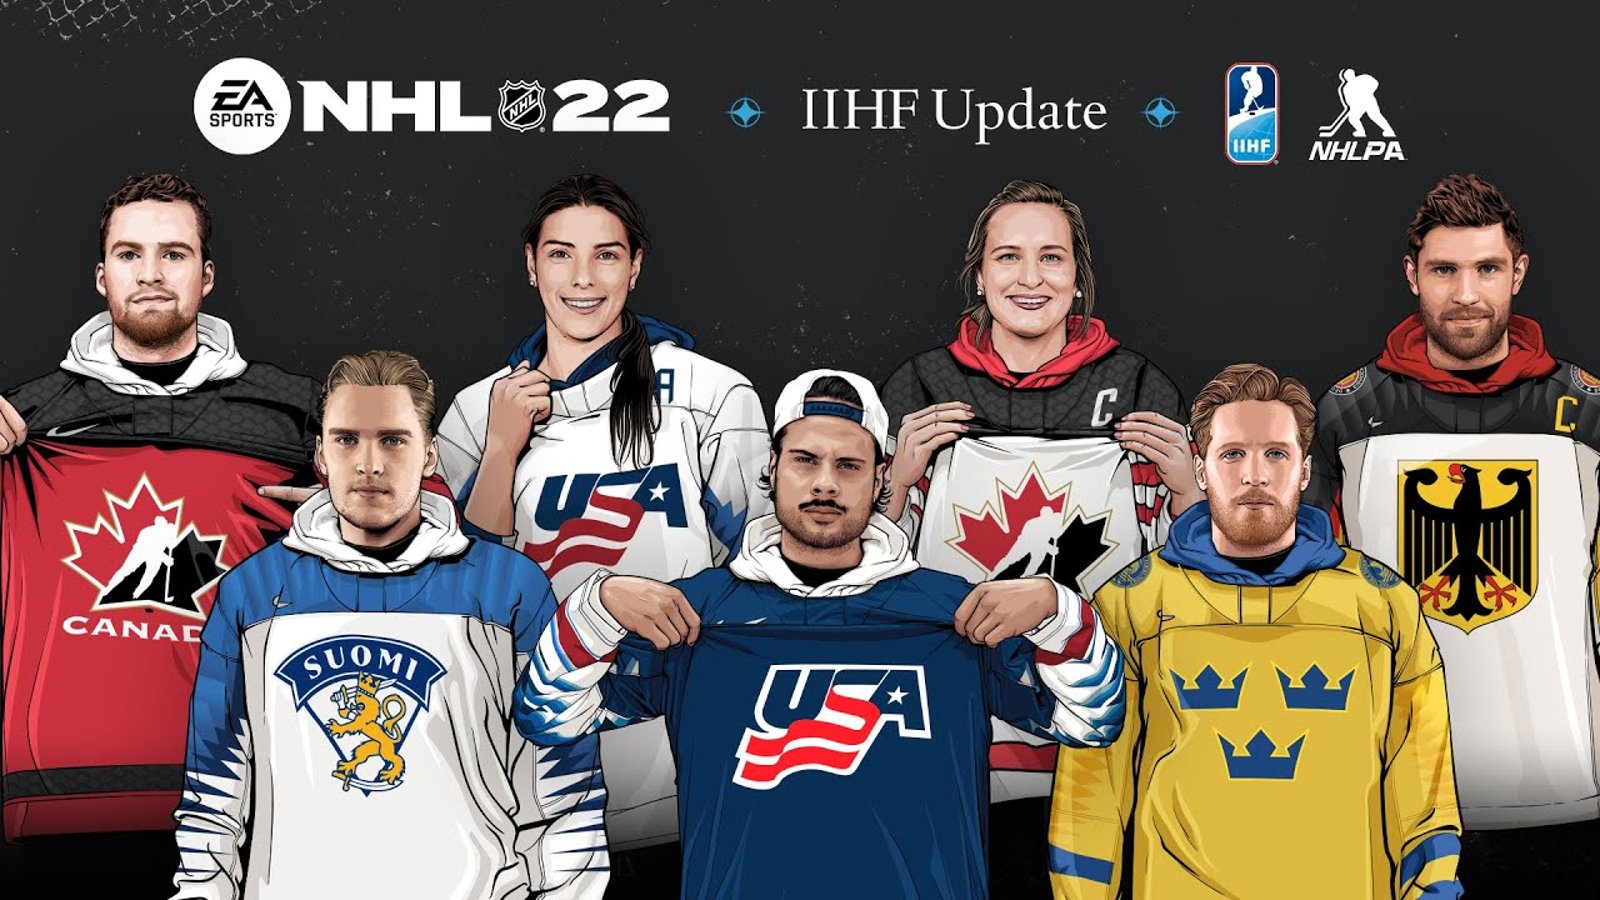 Les inscriptions pour le tournoi mondial NHL 22 sont ouvertes